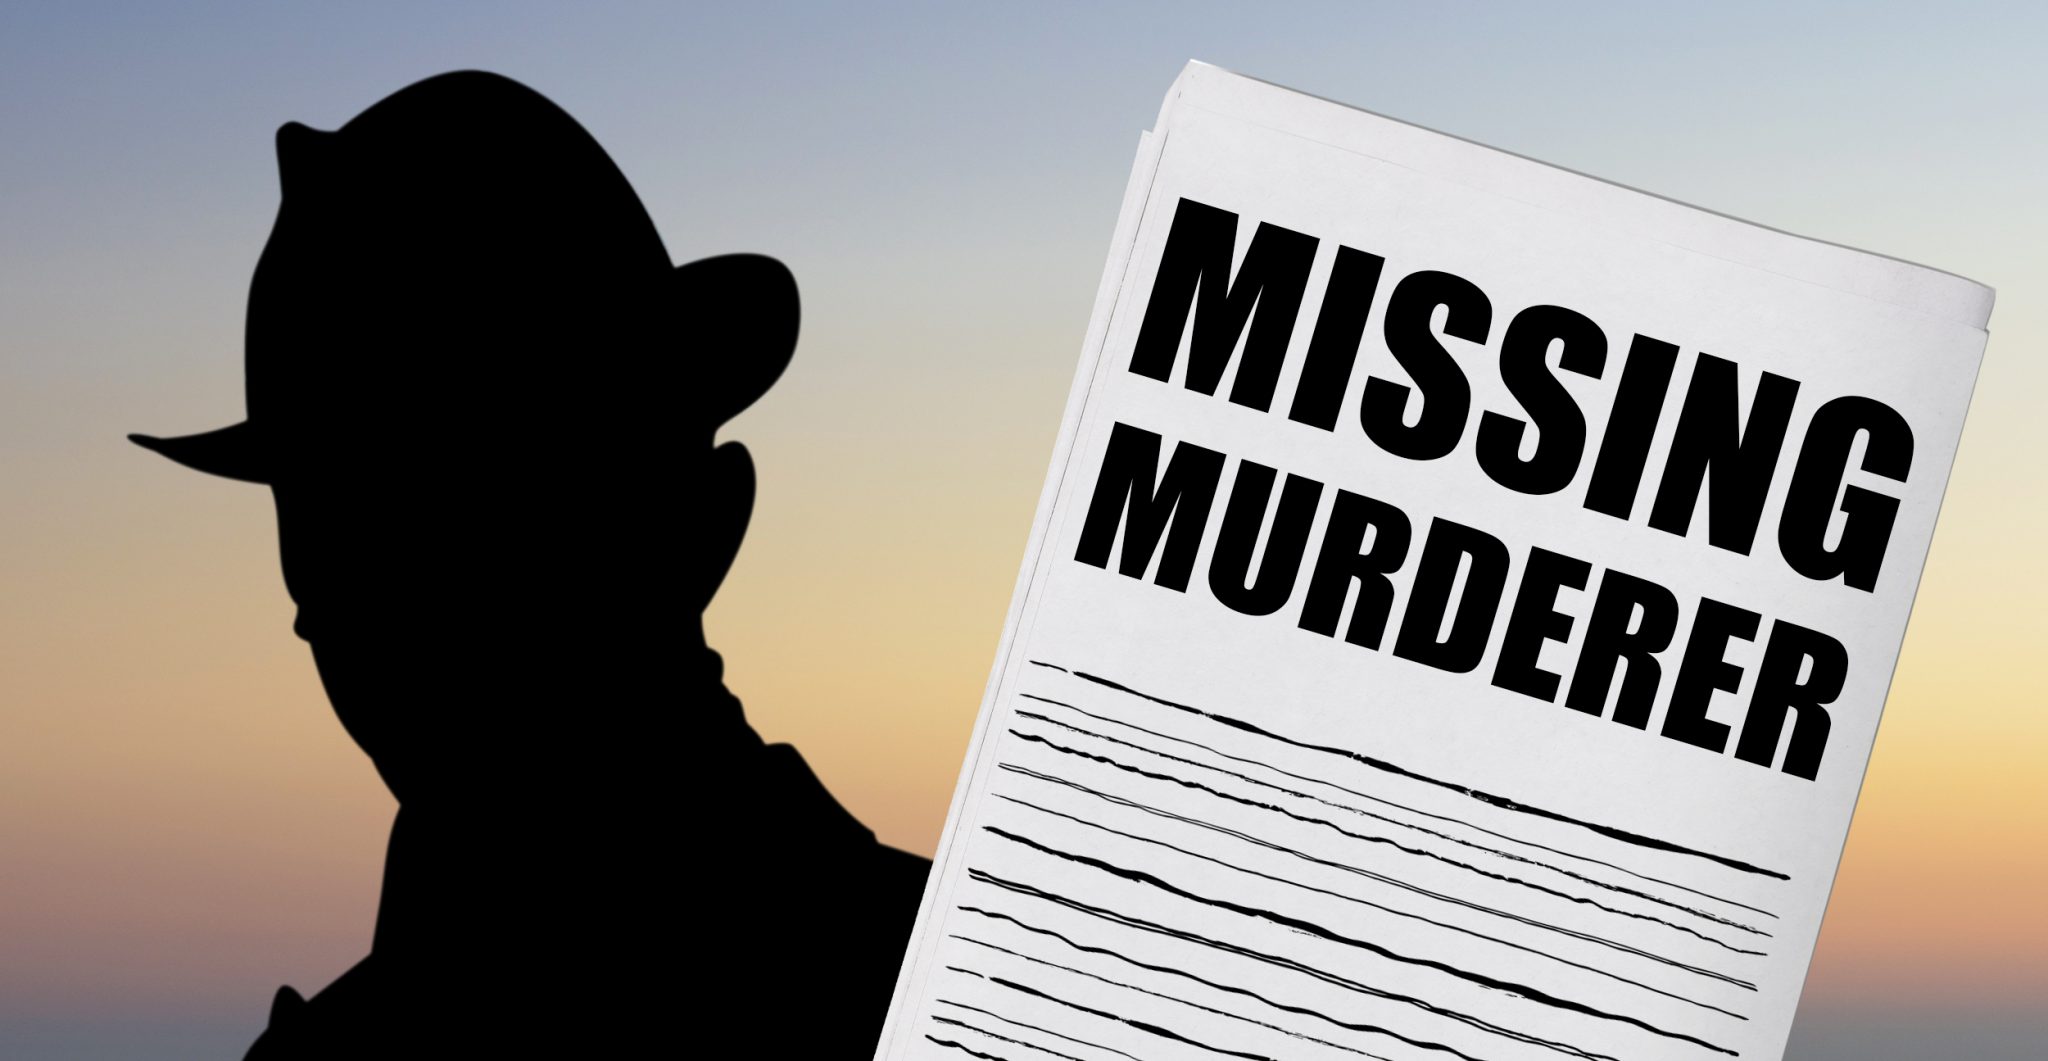 Missing murderer found